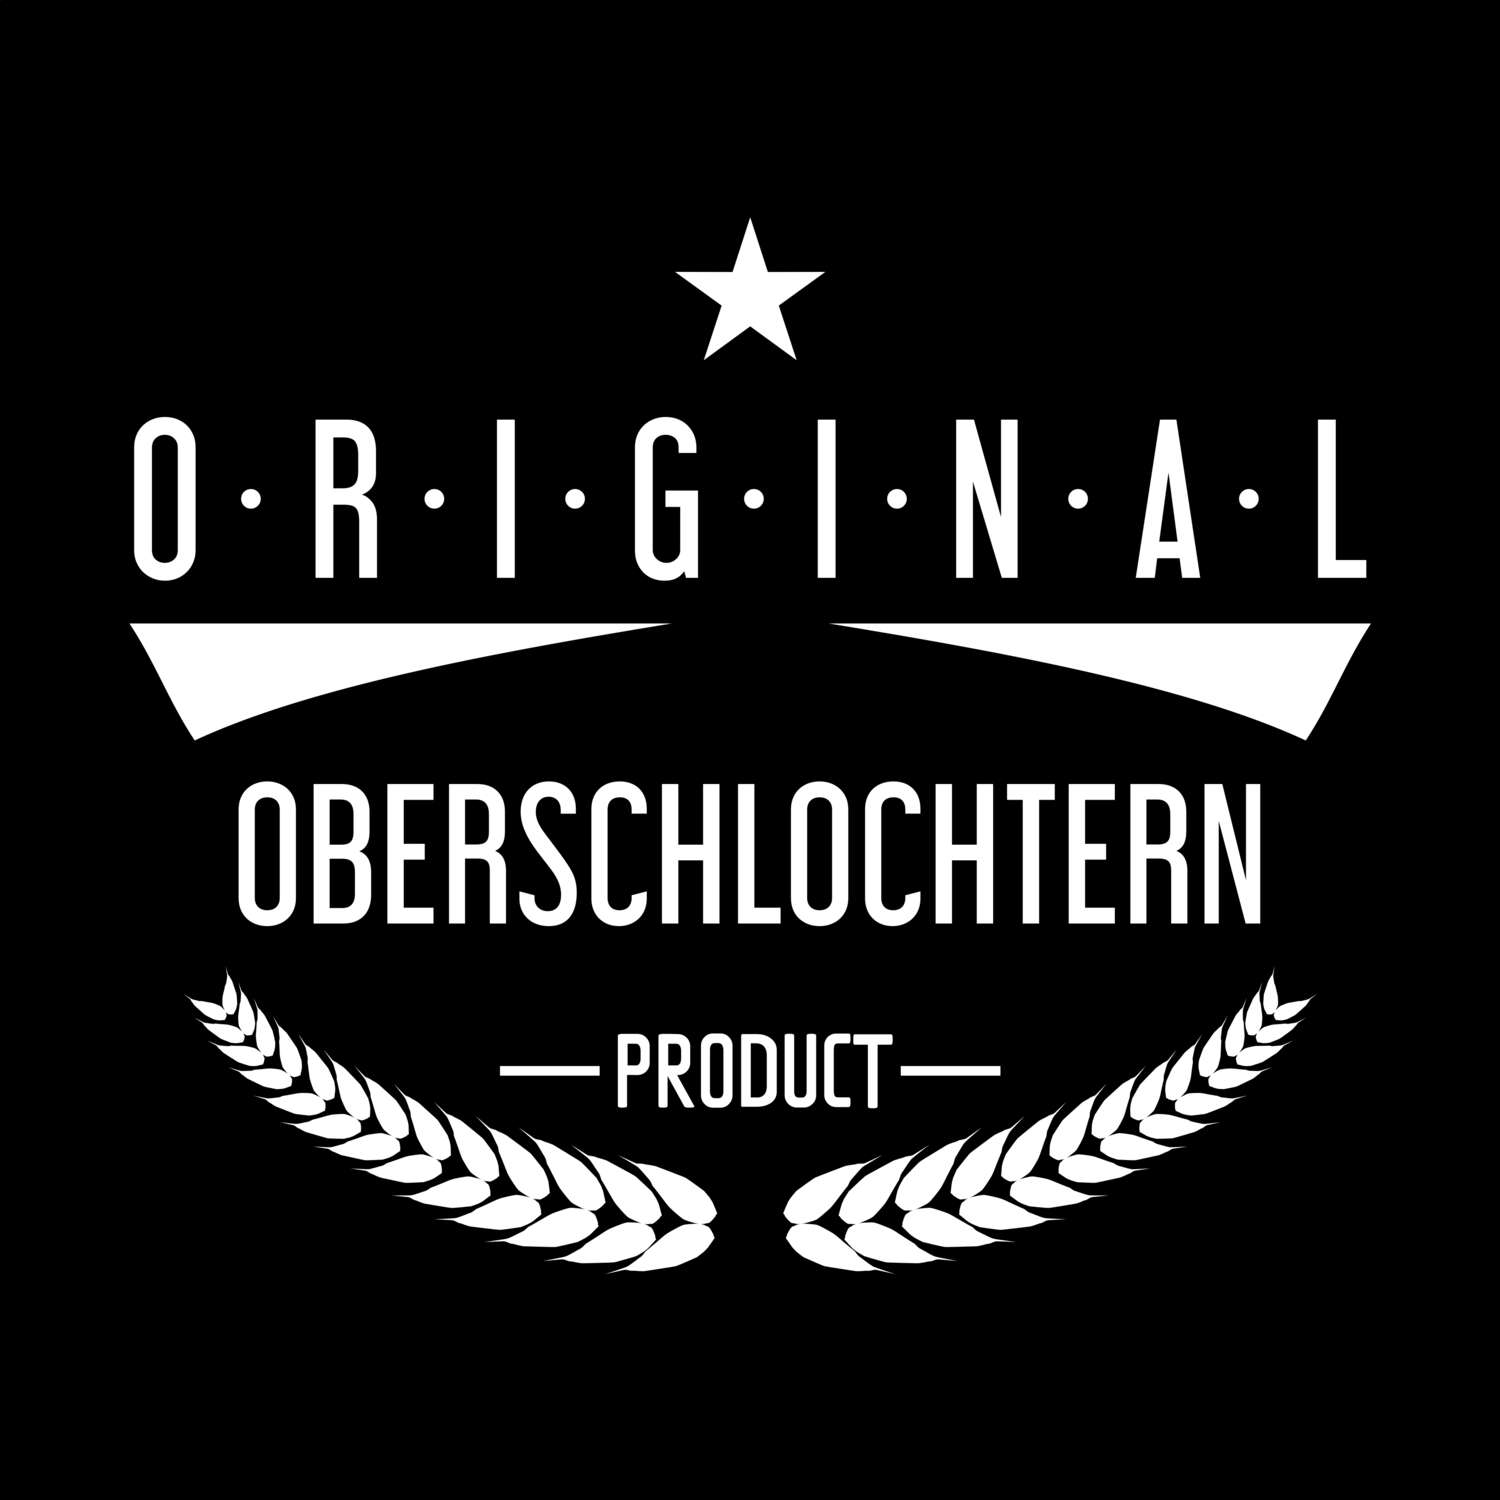 Oberschlochtern T-Shirt »Original Product«